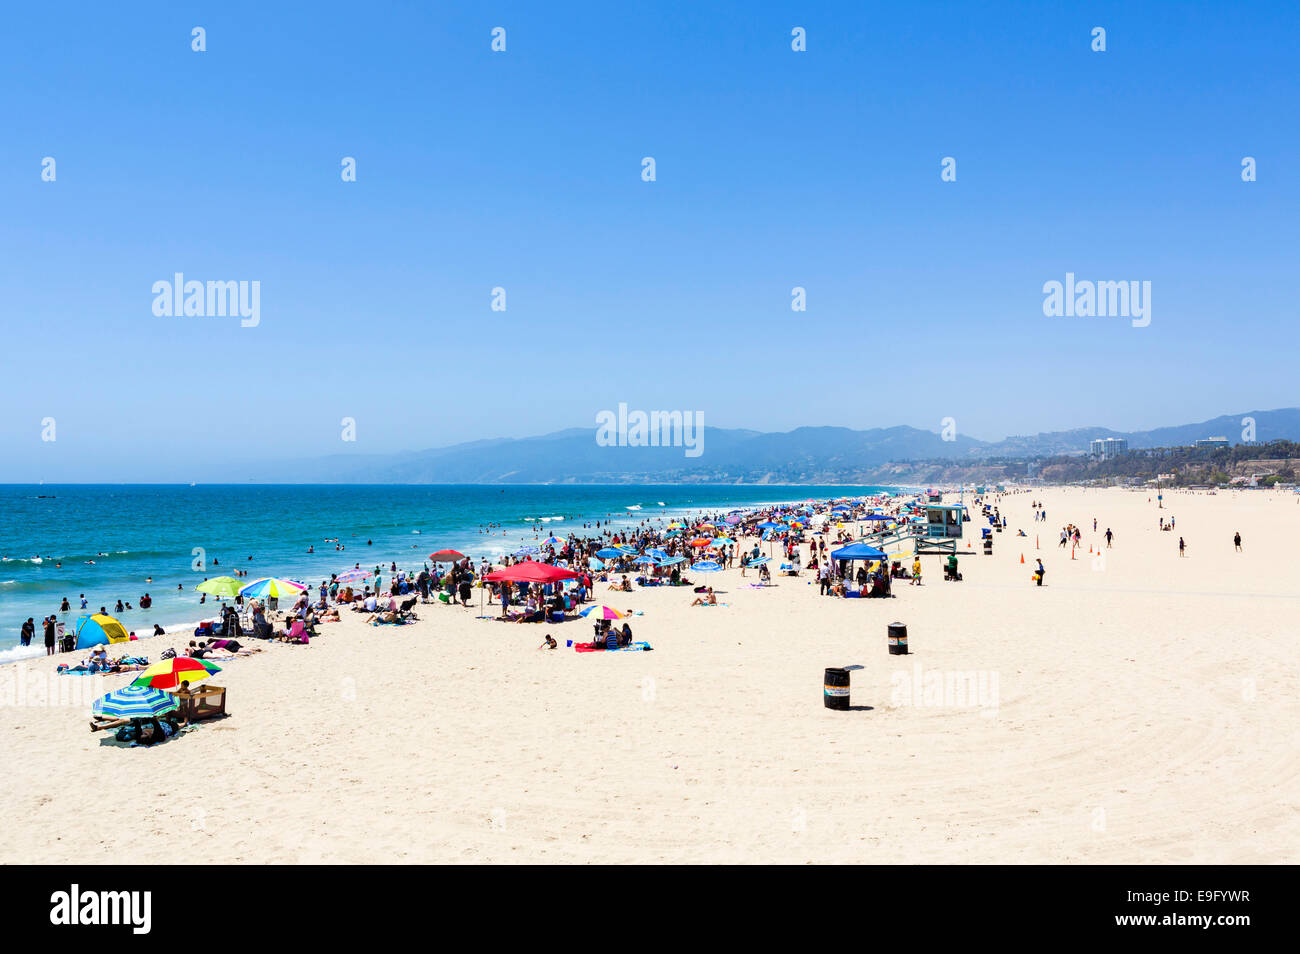 La plage de Santa Monica vue de l'embarcadère, Los Angeles, Californie, USA Banque D'Images